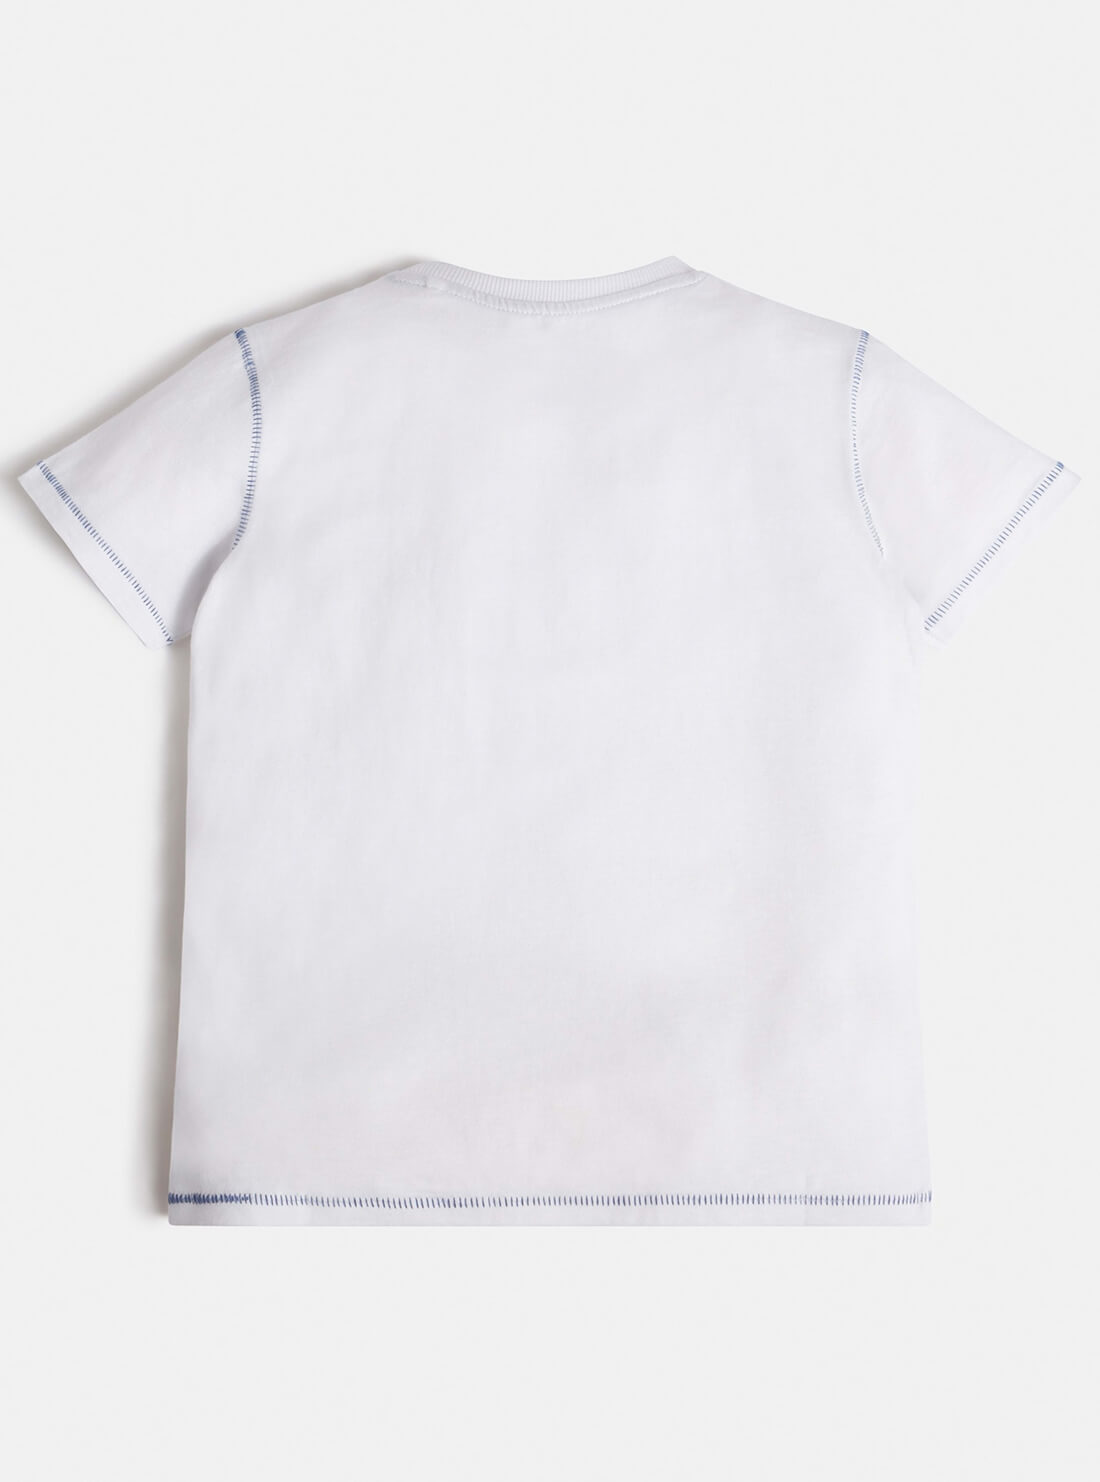 GUESS Big Boy White Graphic Retro Logo T-Shirt (7-16) L1BI02I3Z11 Back View